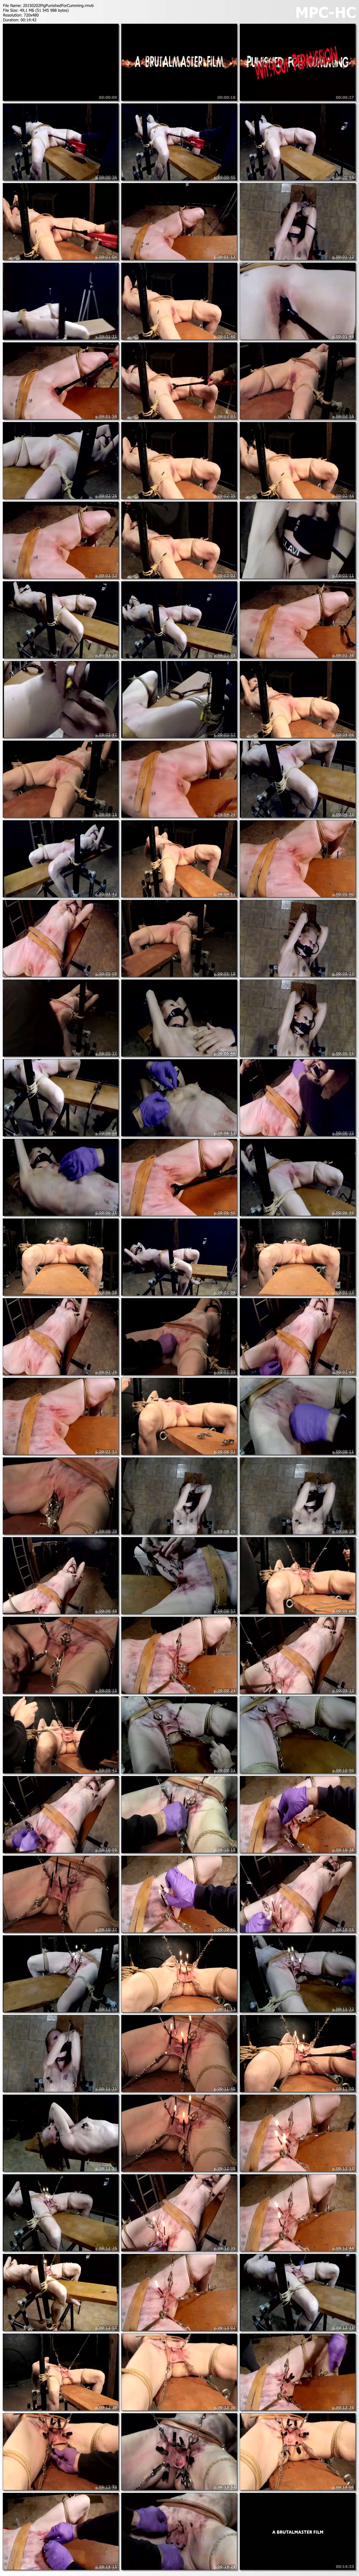 20150202 Pig Punished For Cumming rmvb thumbs